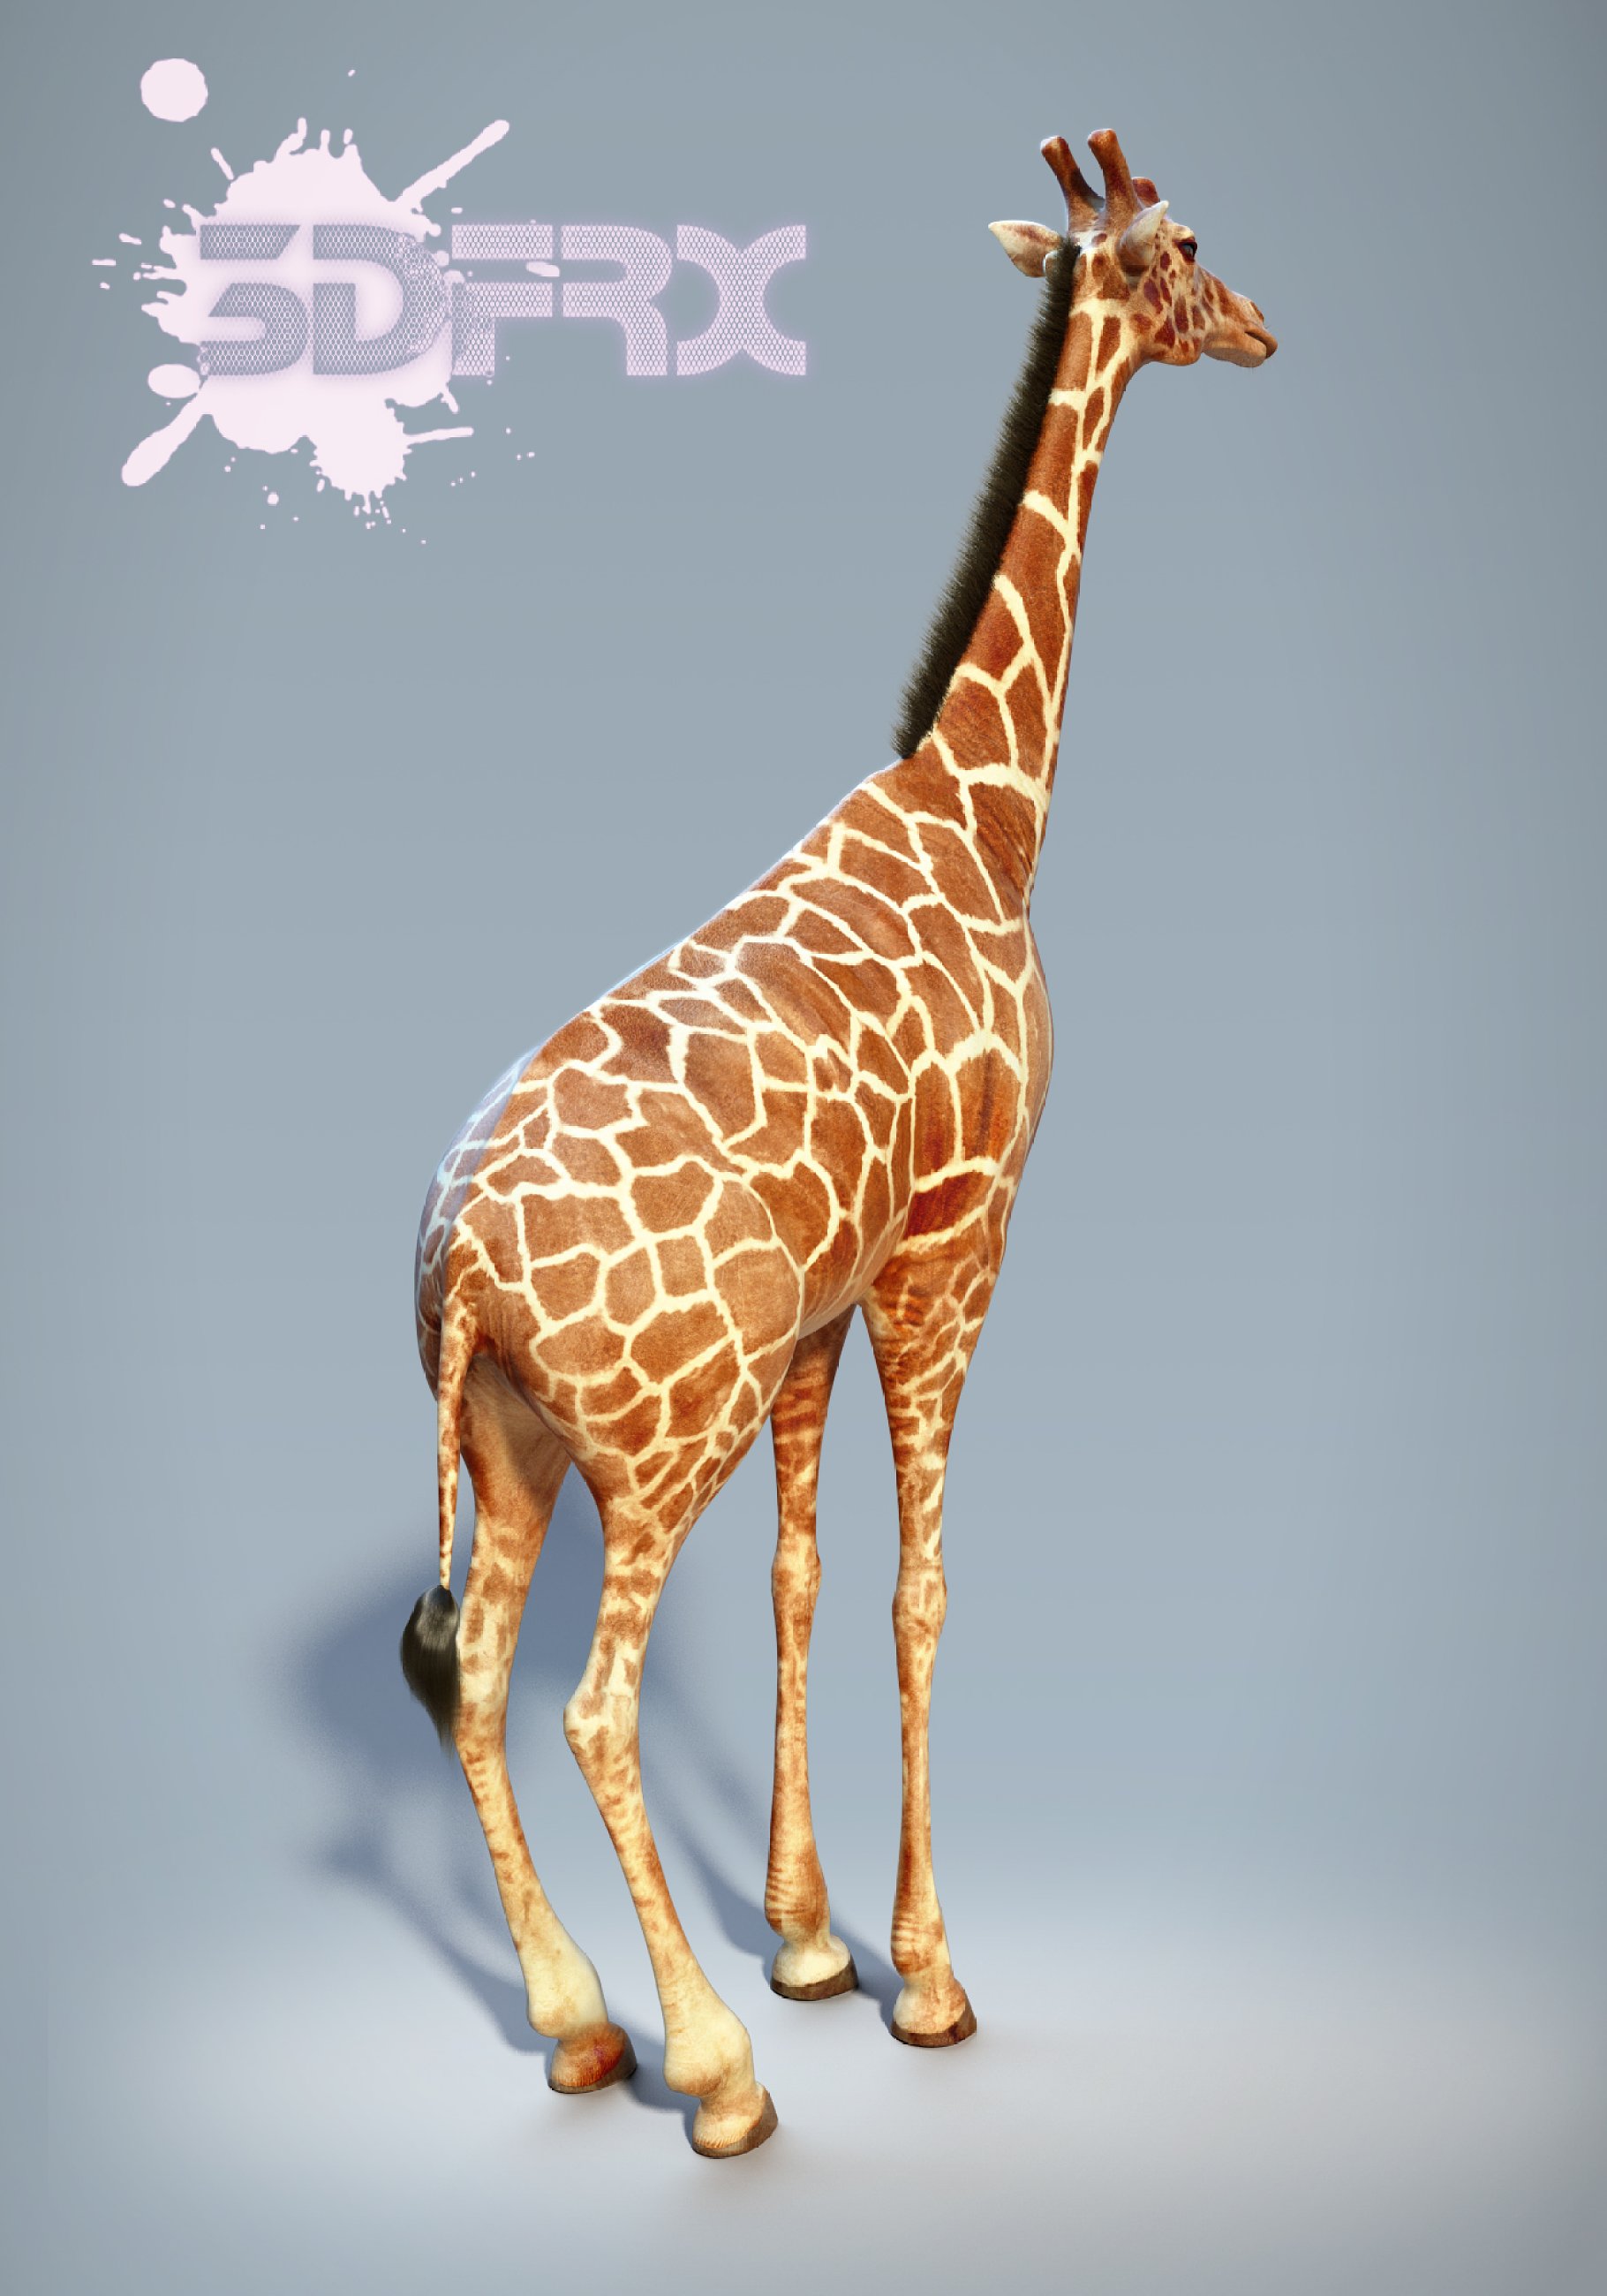 Rendering of a wonderful 3d model of a giraffe rear view